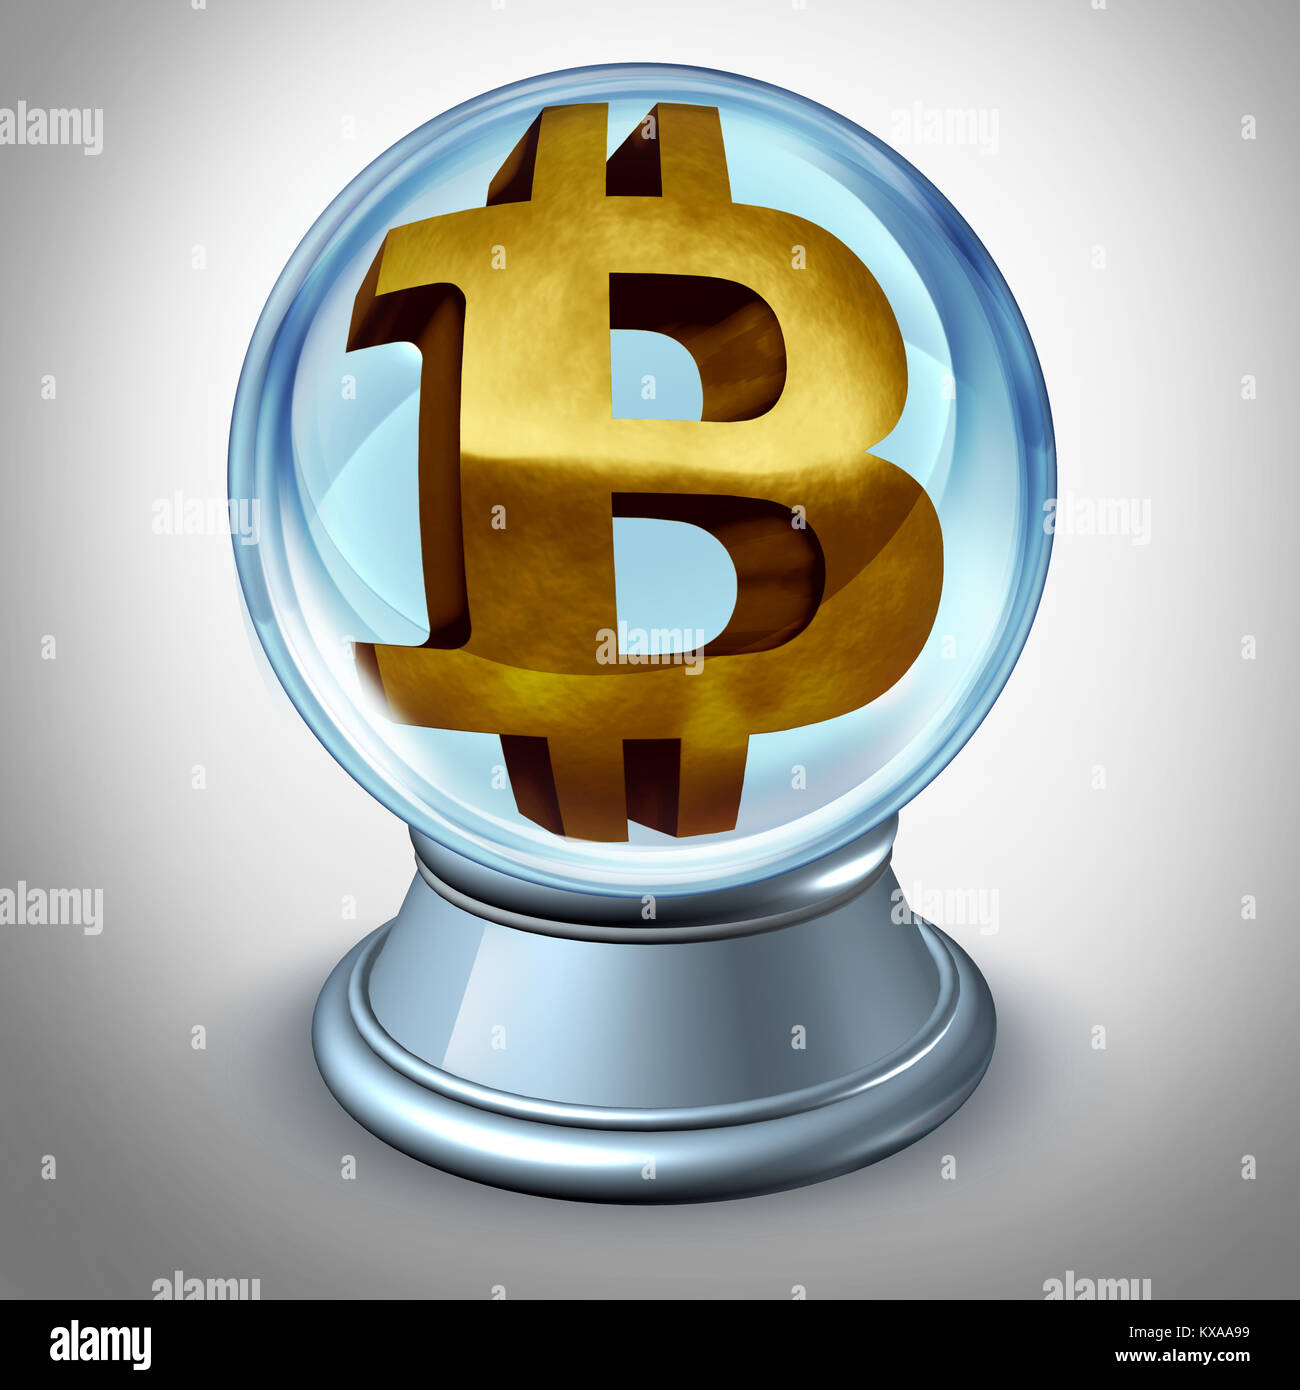 Avenir et prédiction cryptocurrency Bitcoin et prédire la valeur de la monnaie numérique comme un symbole financier à l'intérieur d'une boule comme un etui transparent illustr 3D Banque D'Images